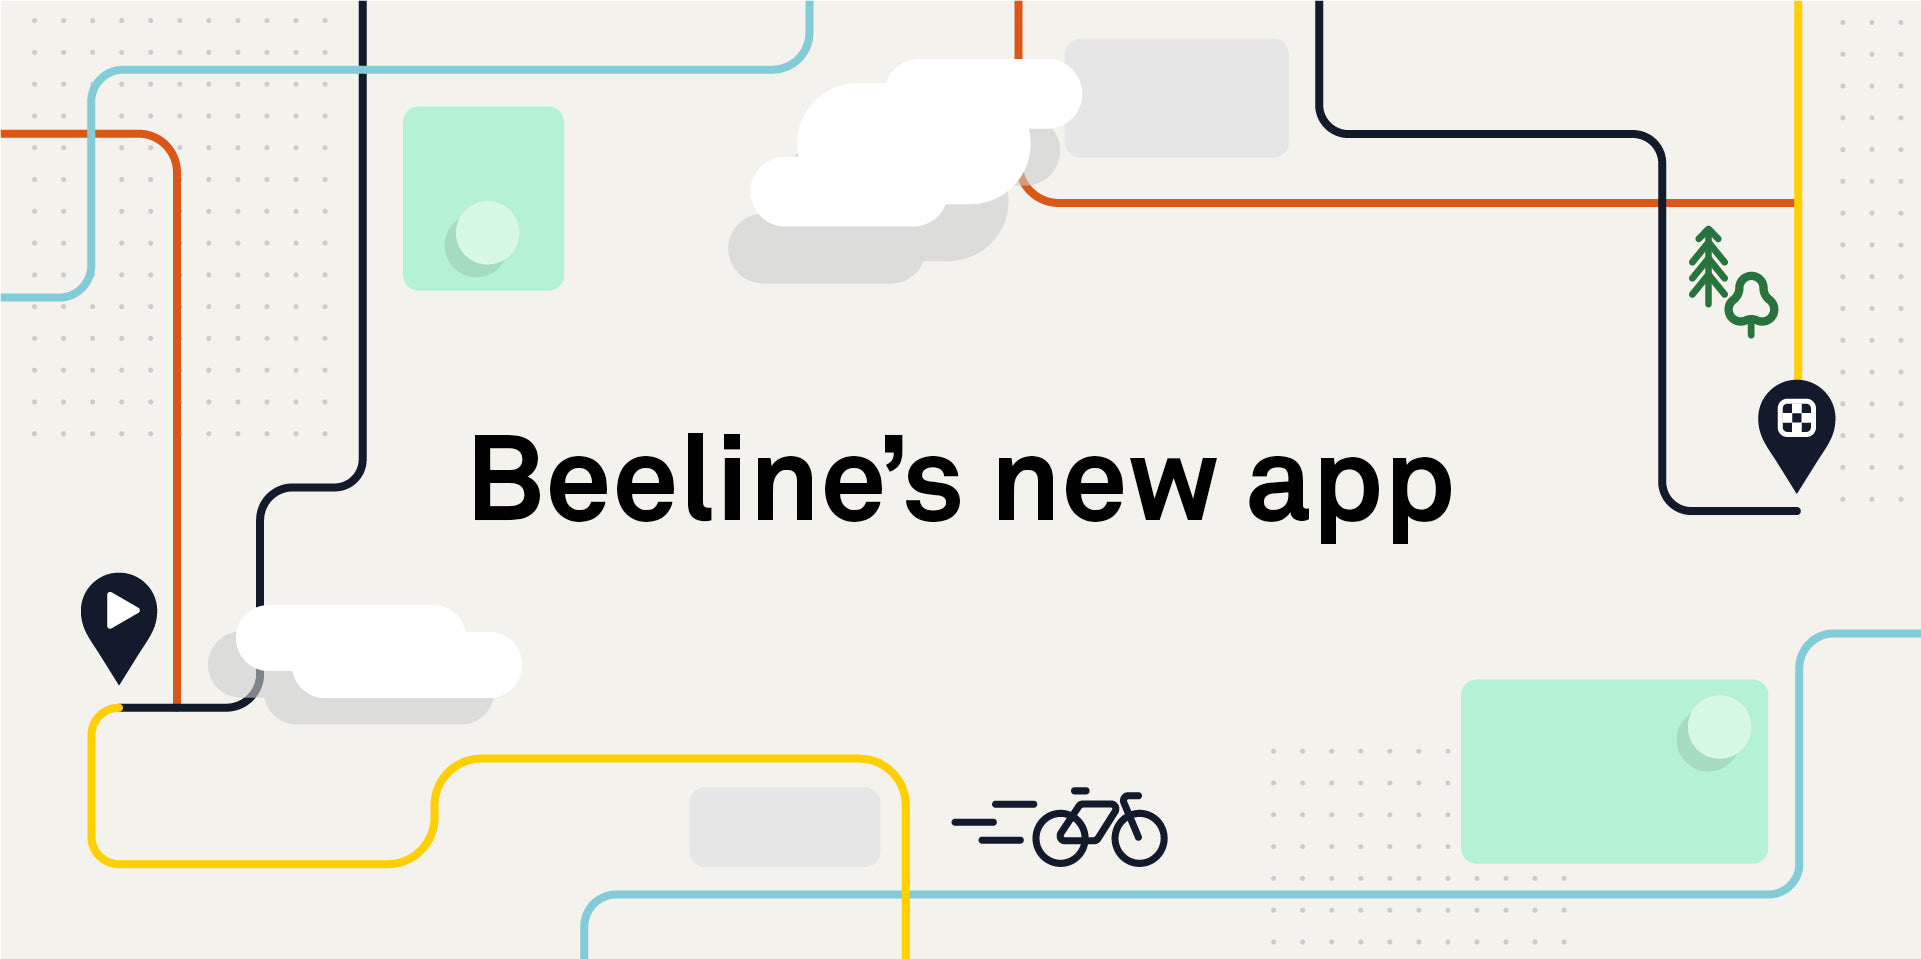 Beeline's new app